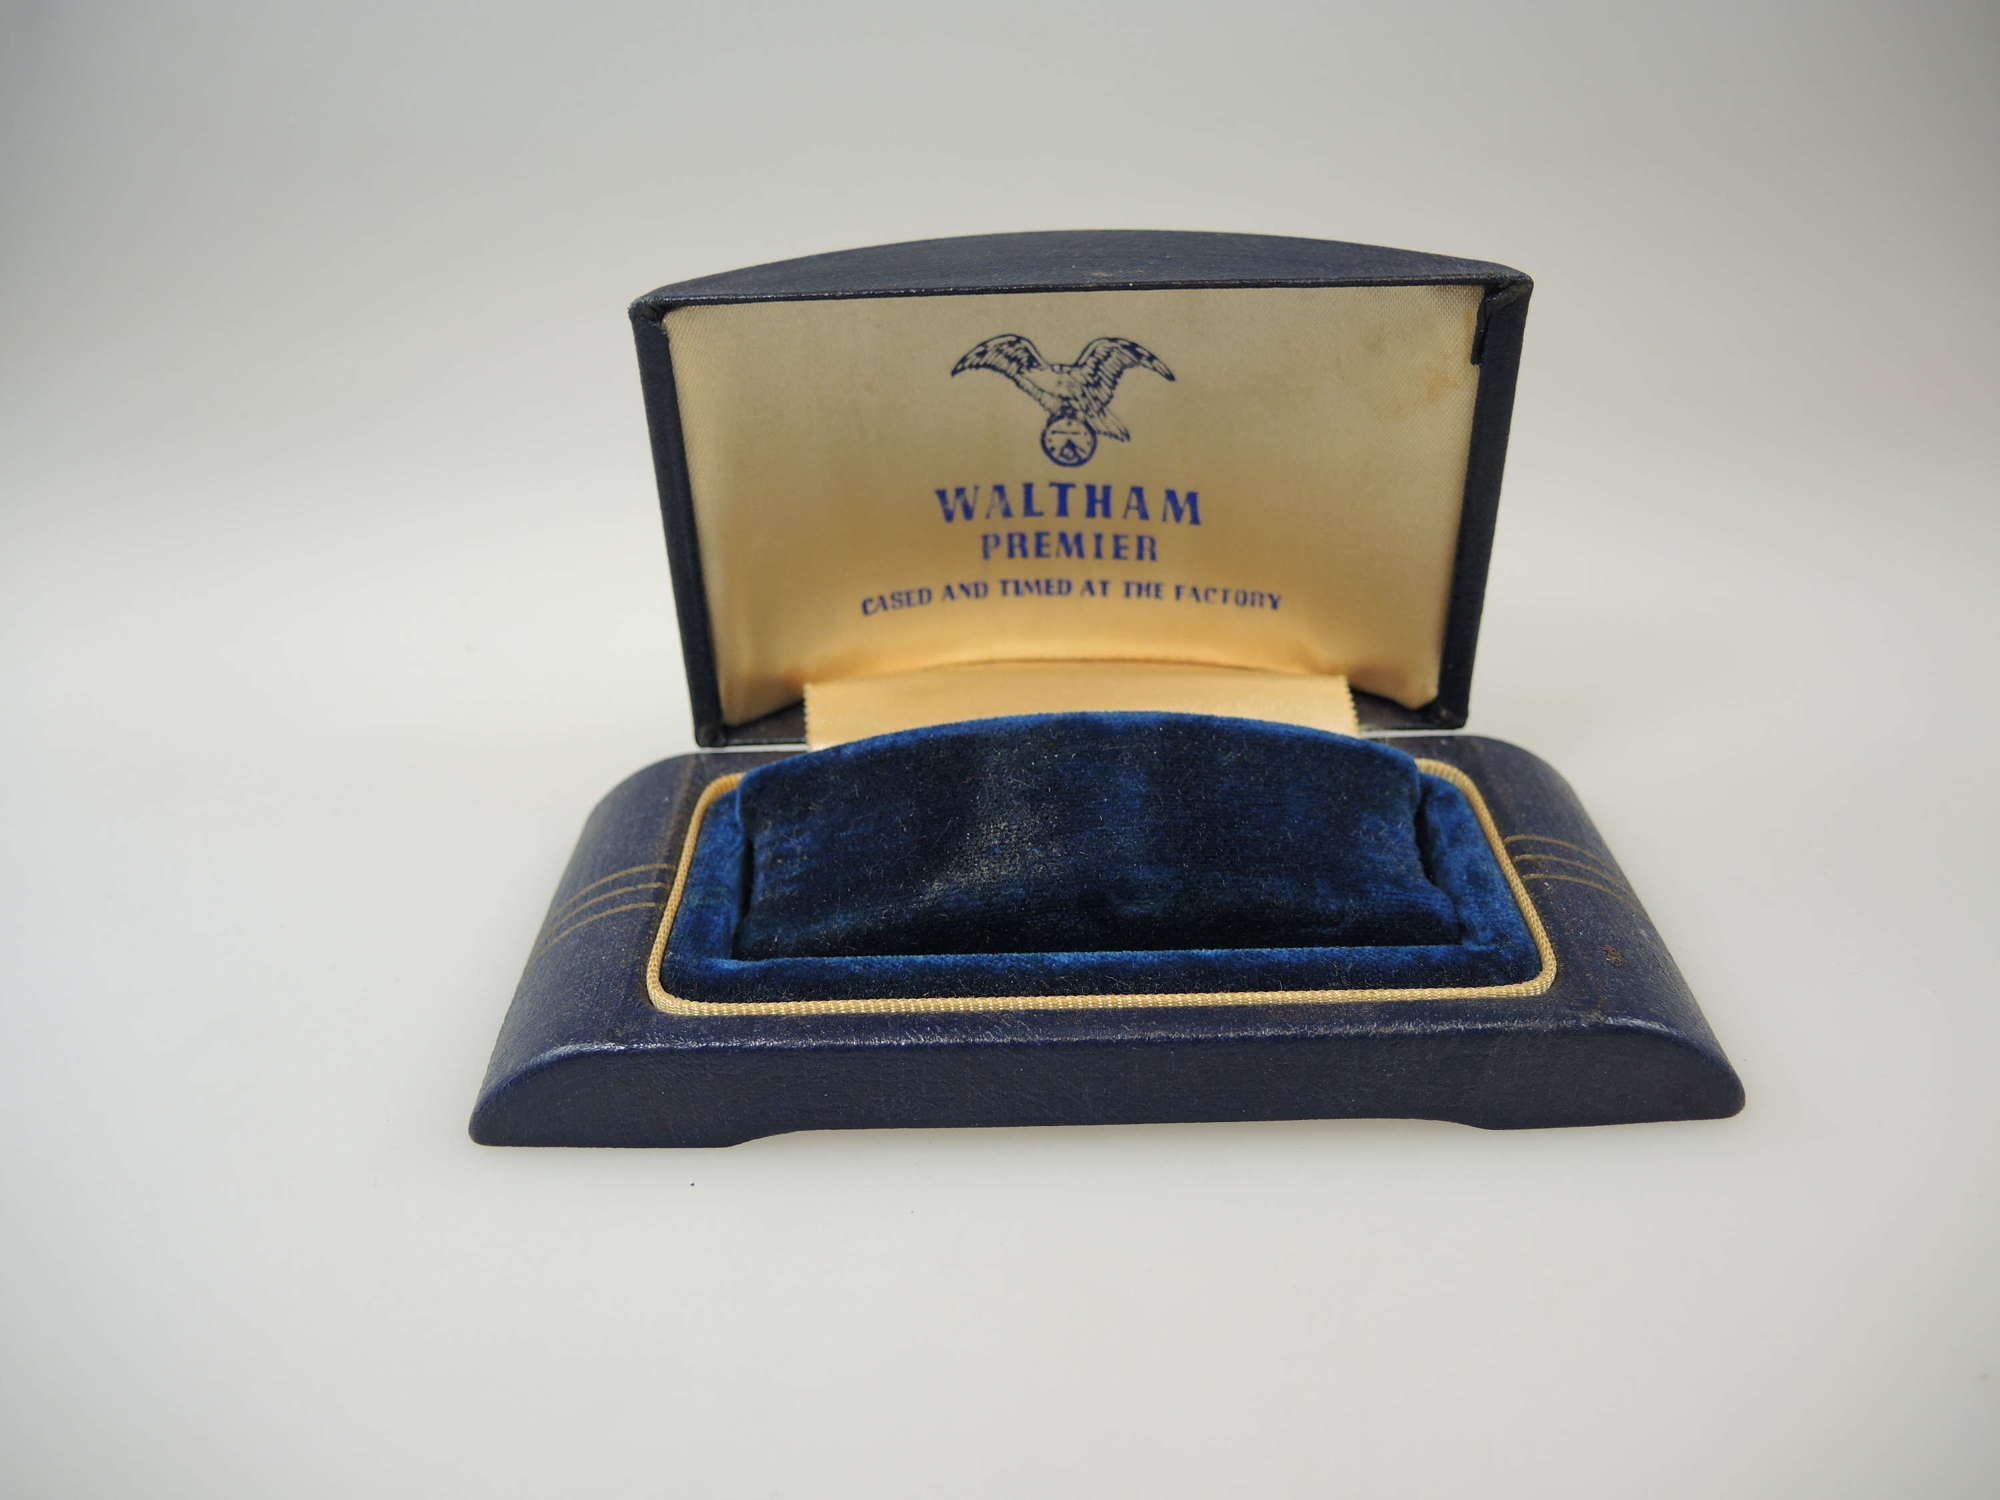 Waltham Premier wrist watch box c1930